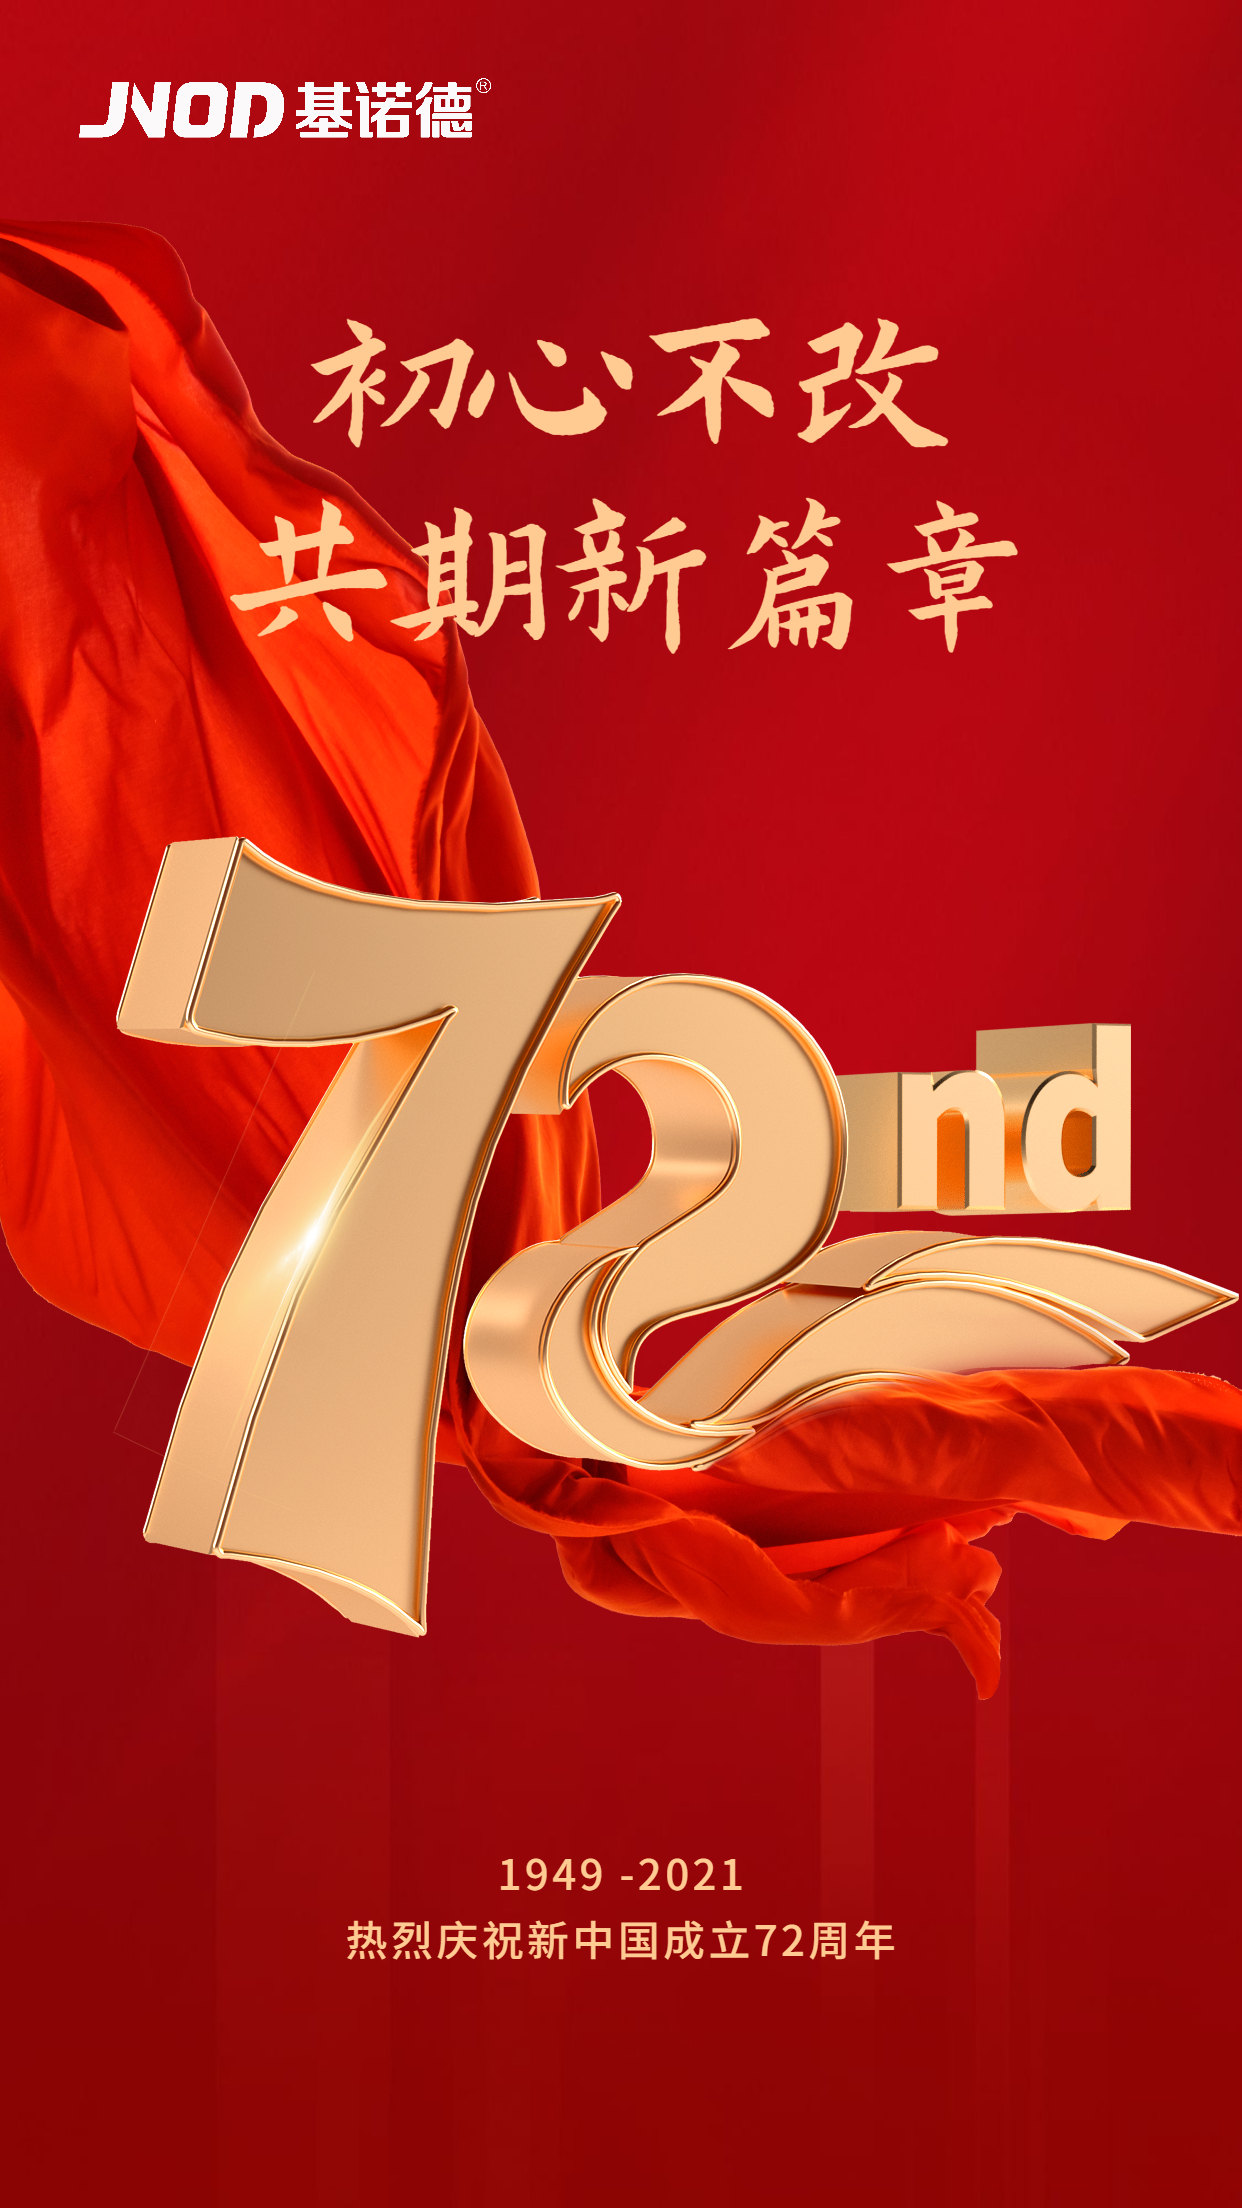 喜迎国庆 | 新中国成立72周年，基诺德祝祖国繁荣昌盛！